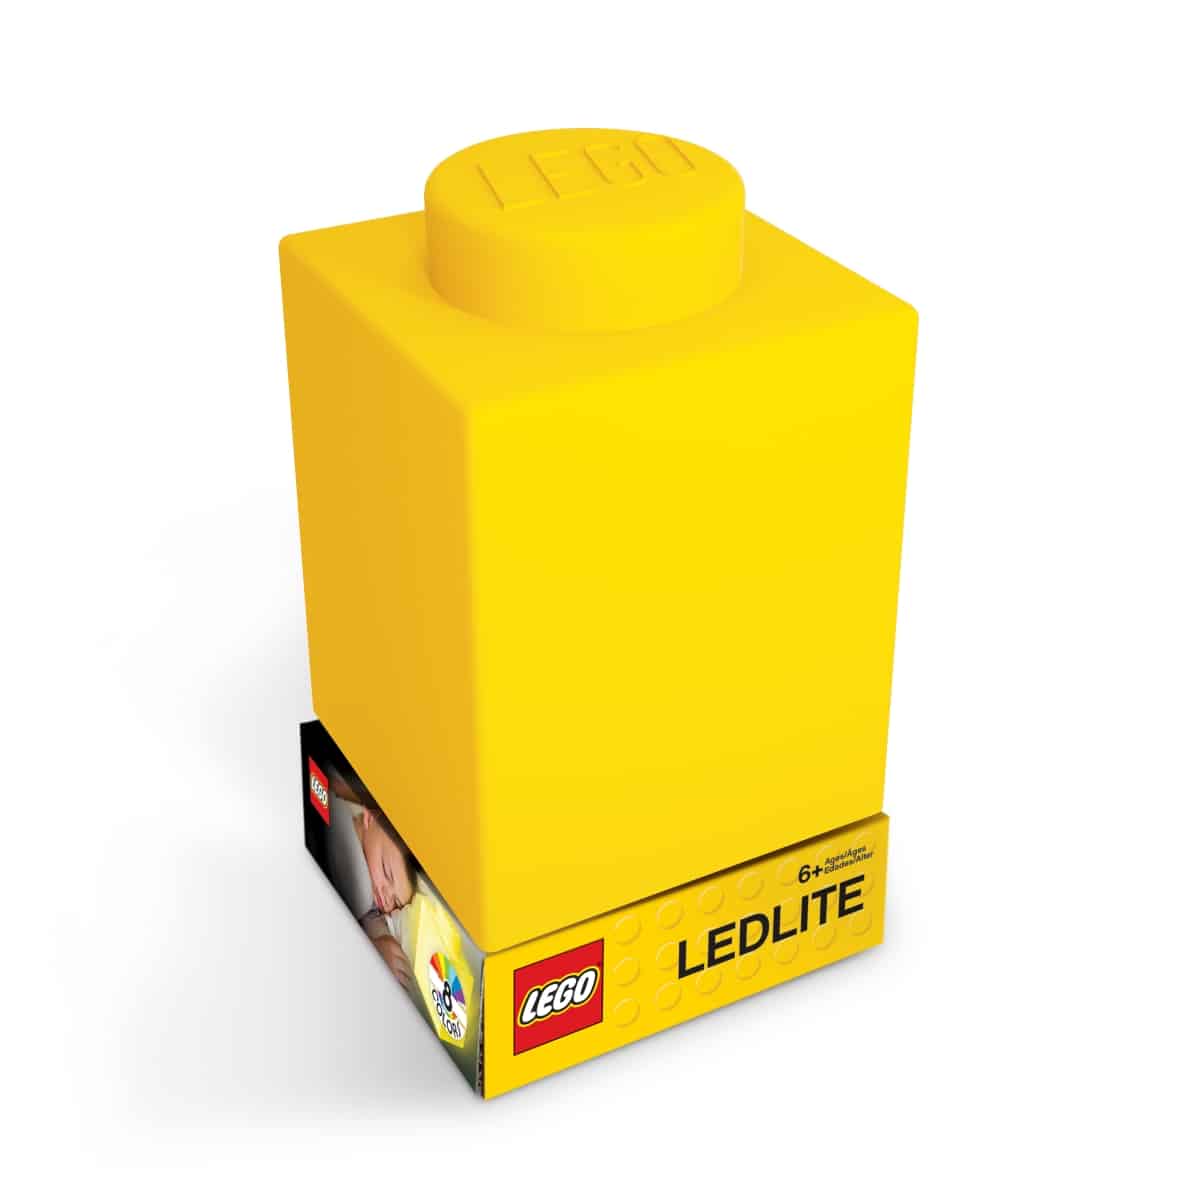 1x1 brick nitelite yellow 5007234